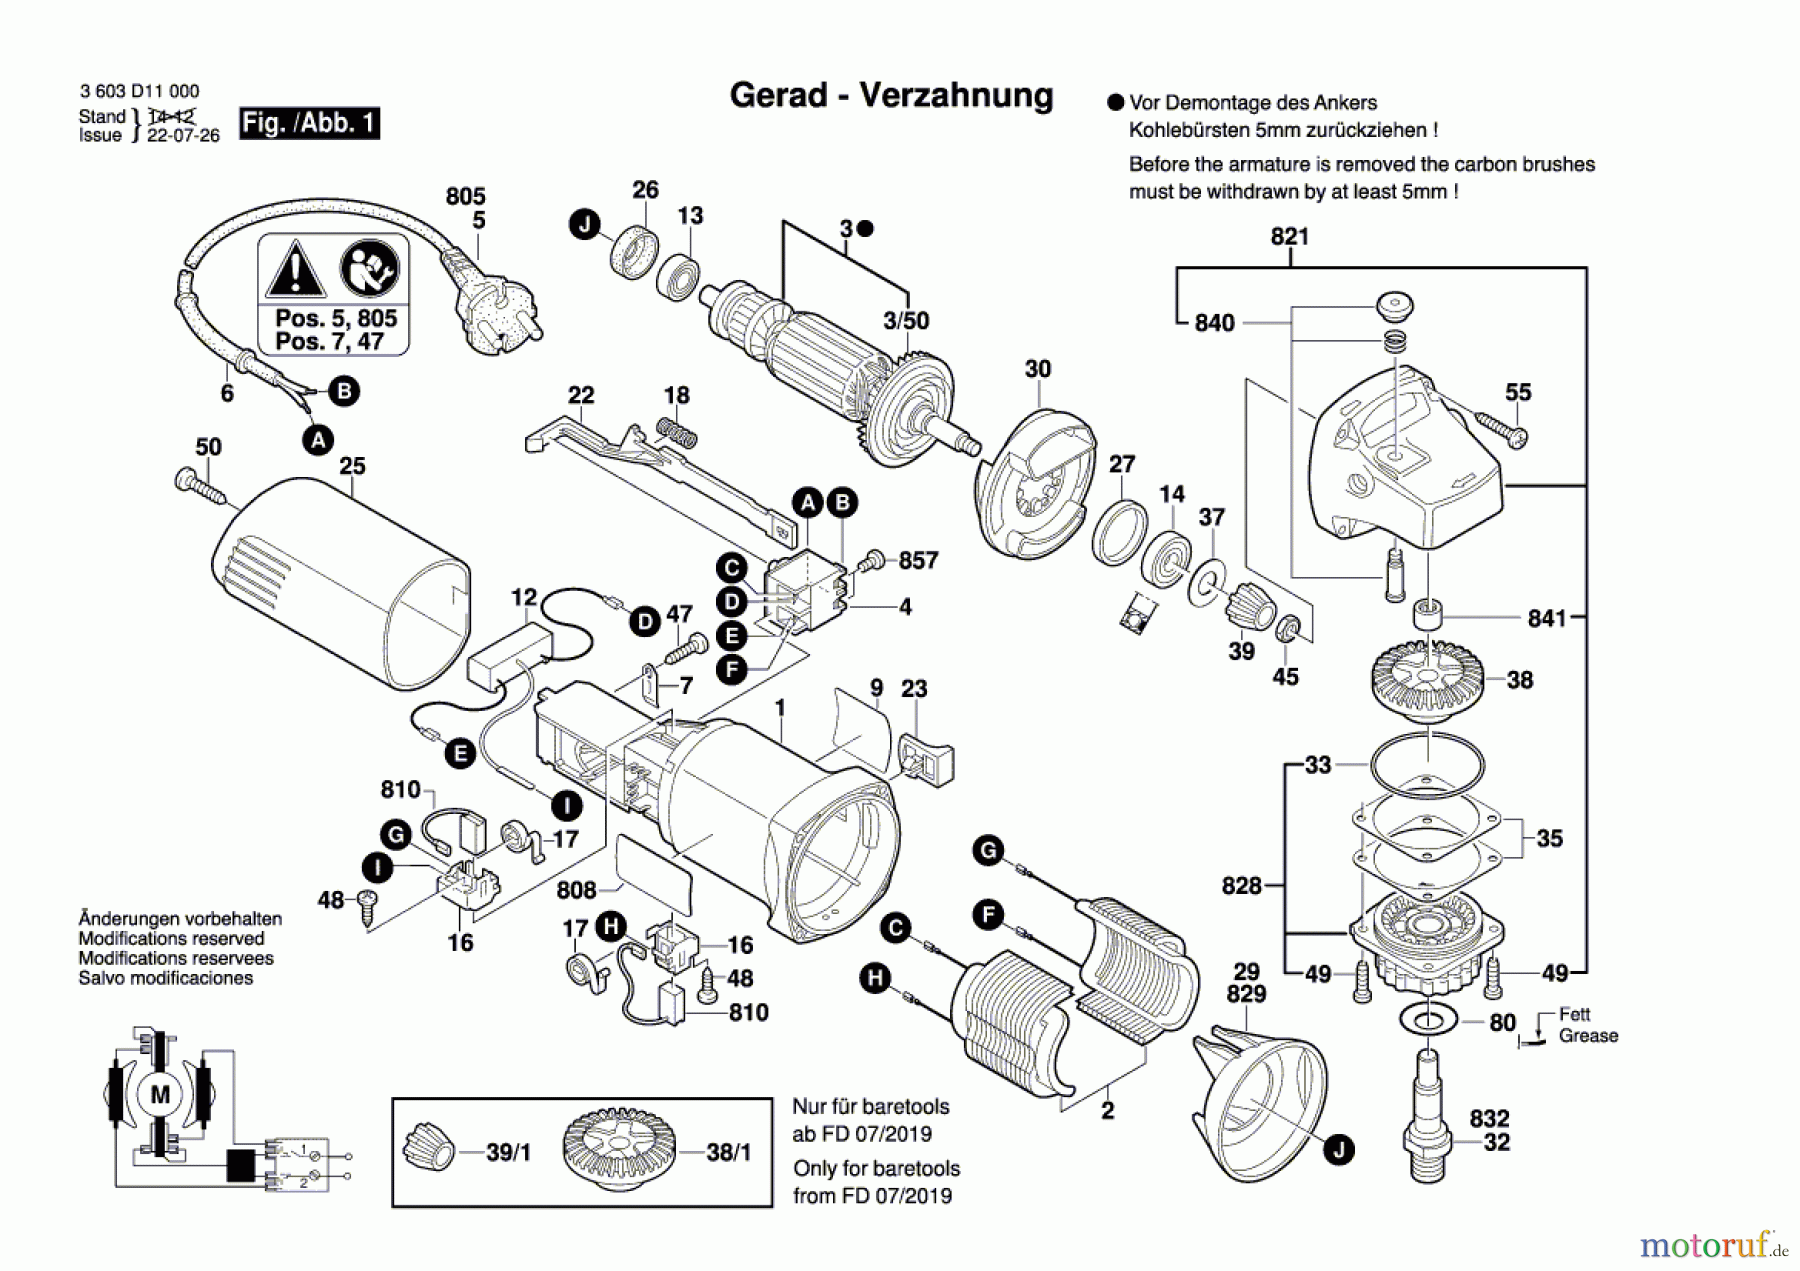  Bosch Werkzeug Winkelschleifer PWS 650 Seite 1